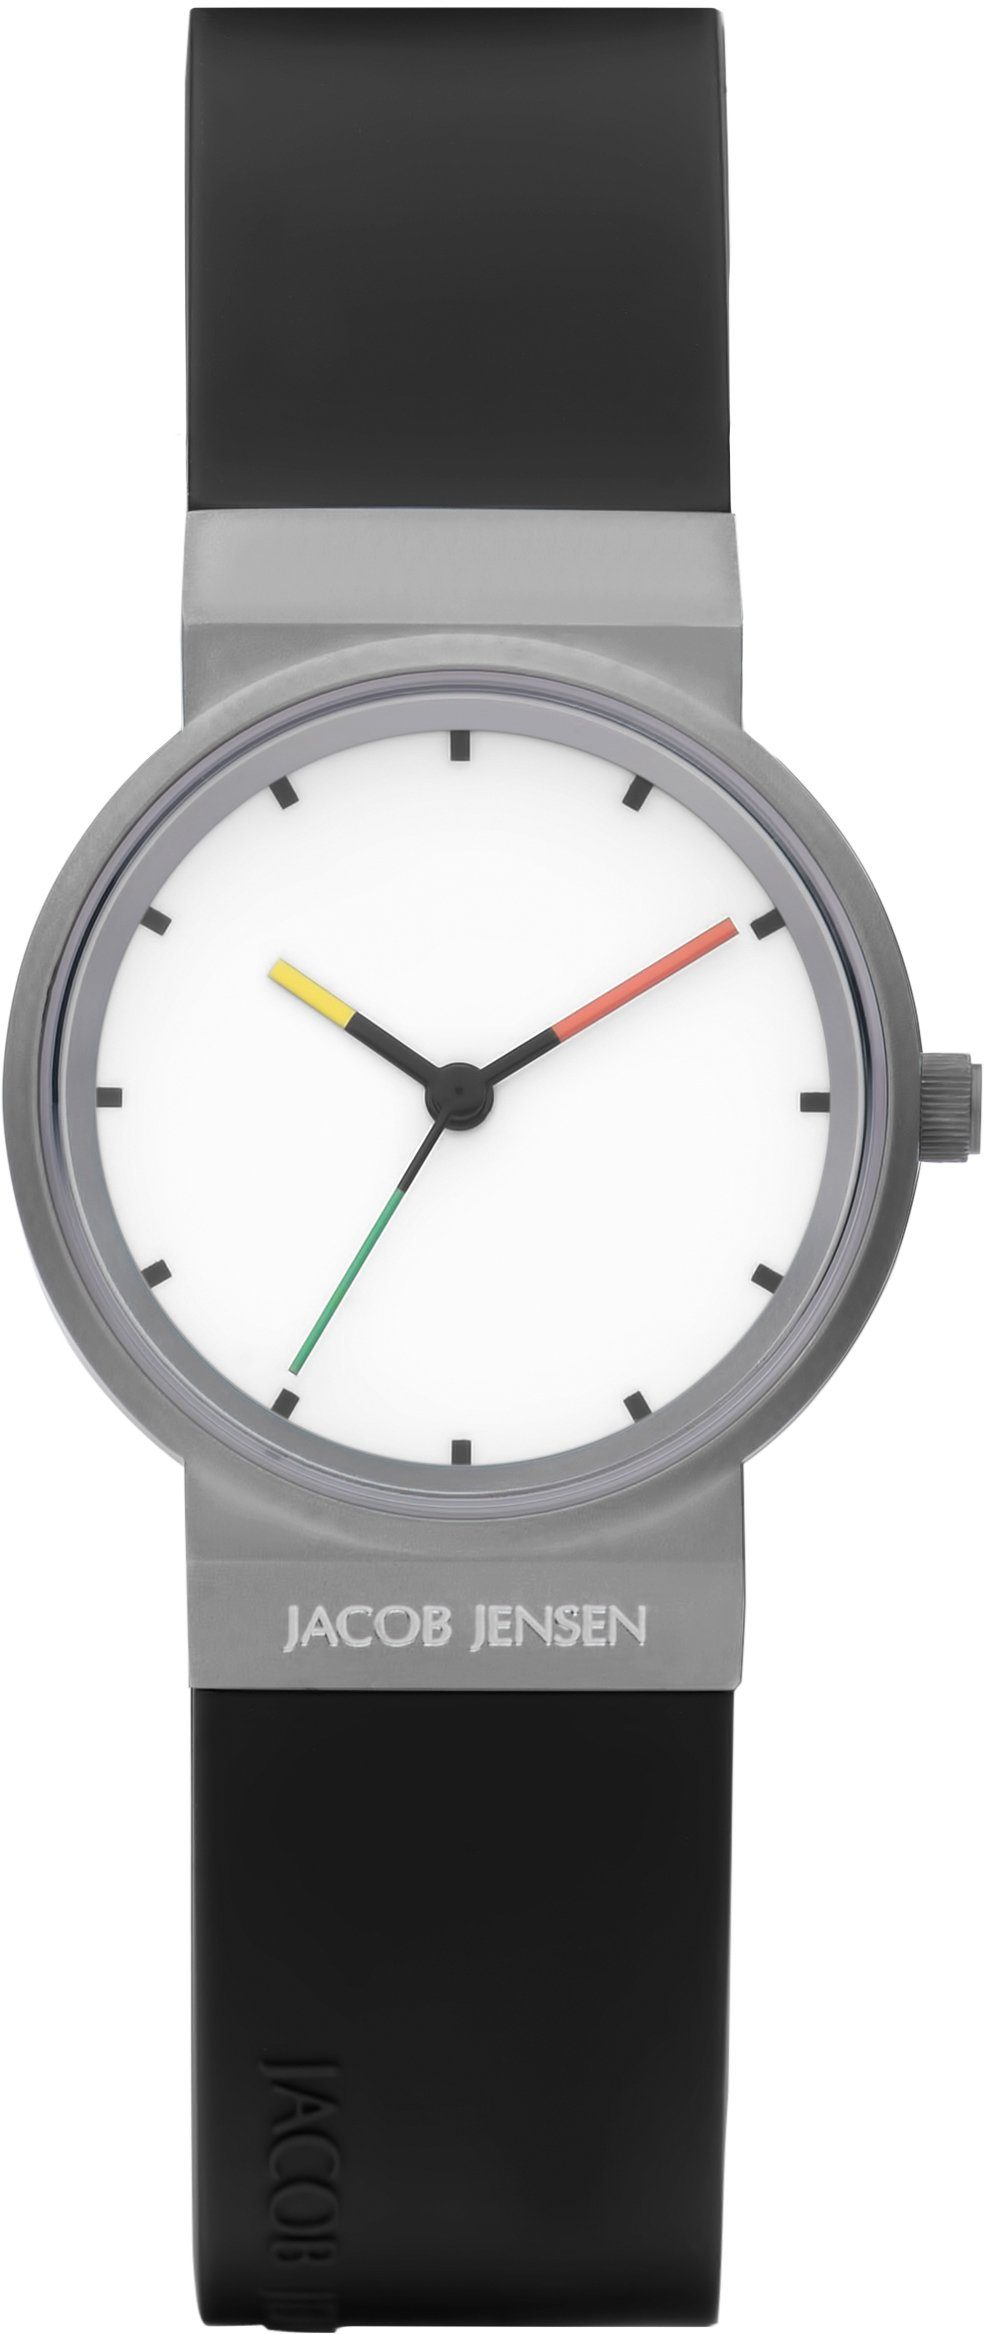 Jacob Jensen Quarzuhr Titanium 29 mm, 652